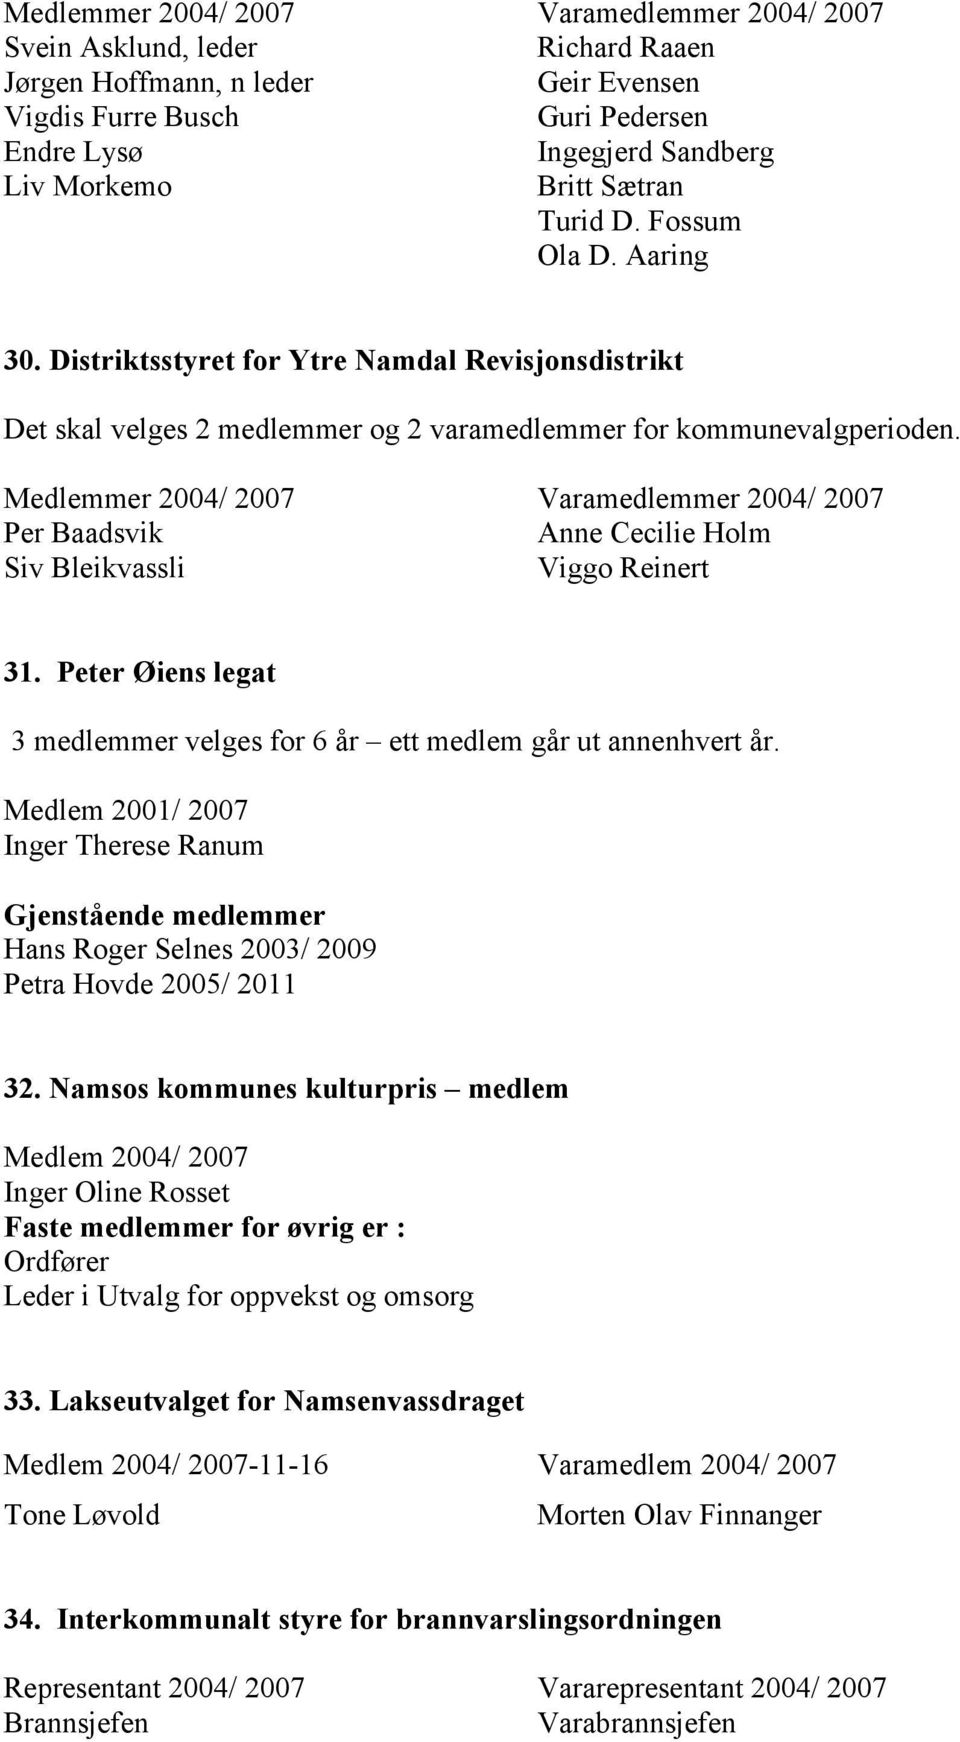 Medlemmer 2004/ 2007 Varamedlemmer 2004/ 2007 Per Baadsvik Anne Cecilie Holm Siv Bleikvassli Viggo Reinert 31. Peter Øiens legat 3 medlemmer velges for 6 år ett medlem går ut annenhvert år.